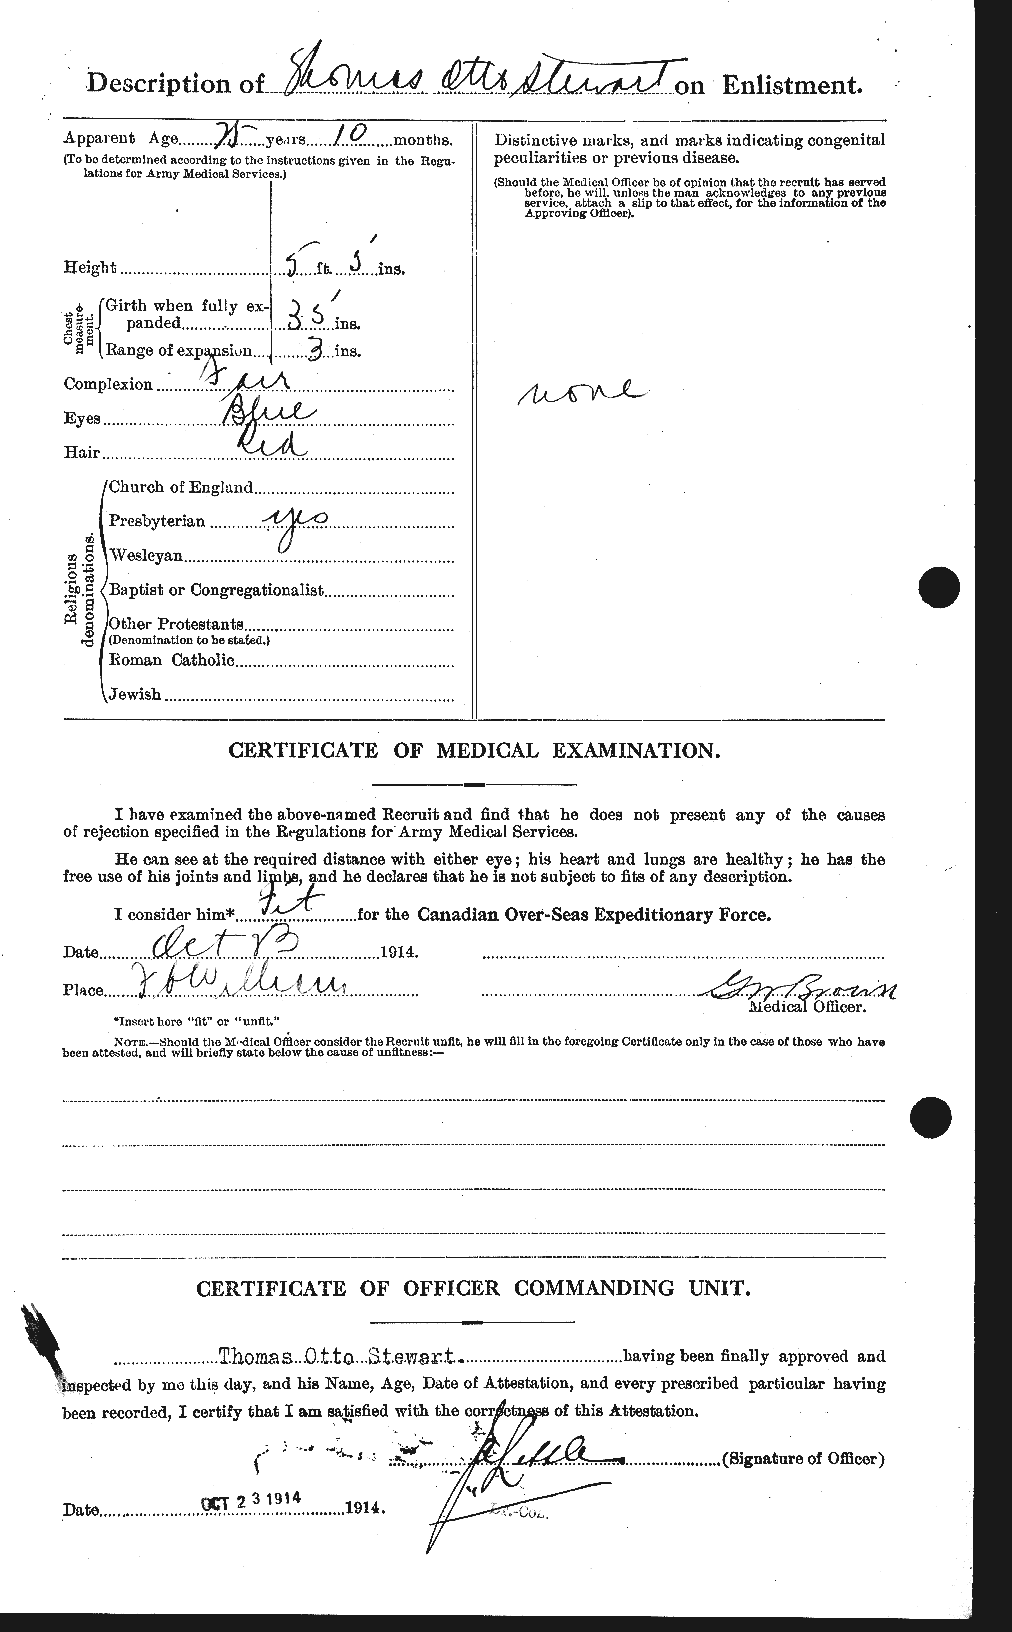 Dossiers du Personnel de la Première Guerre mondiale - CEC 624474b